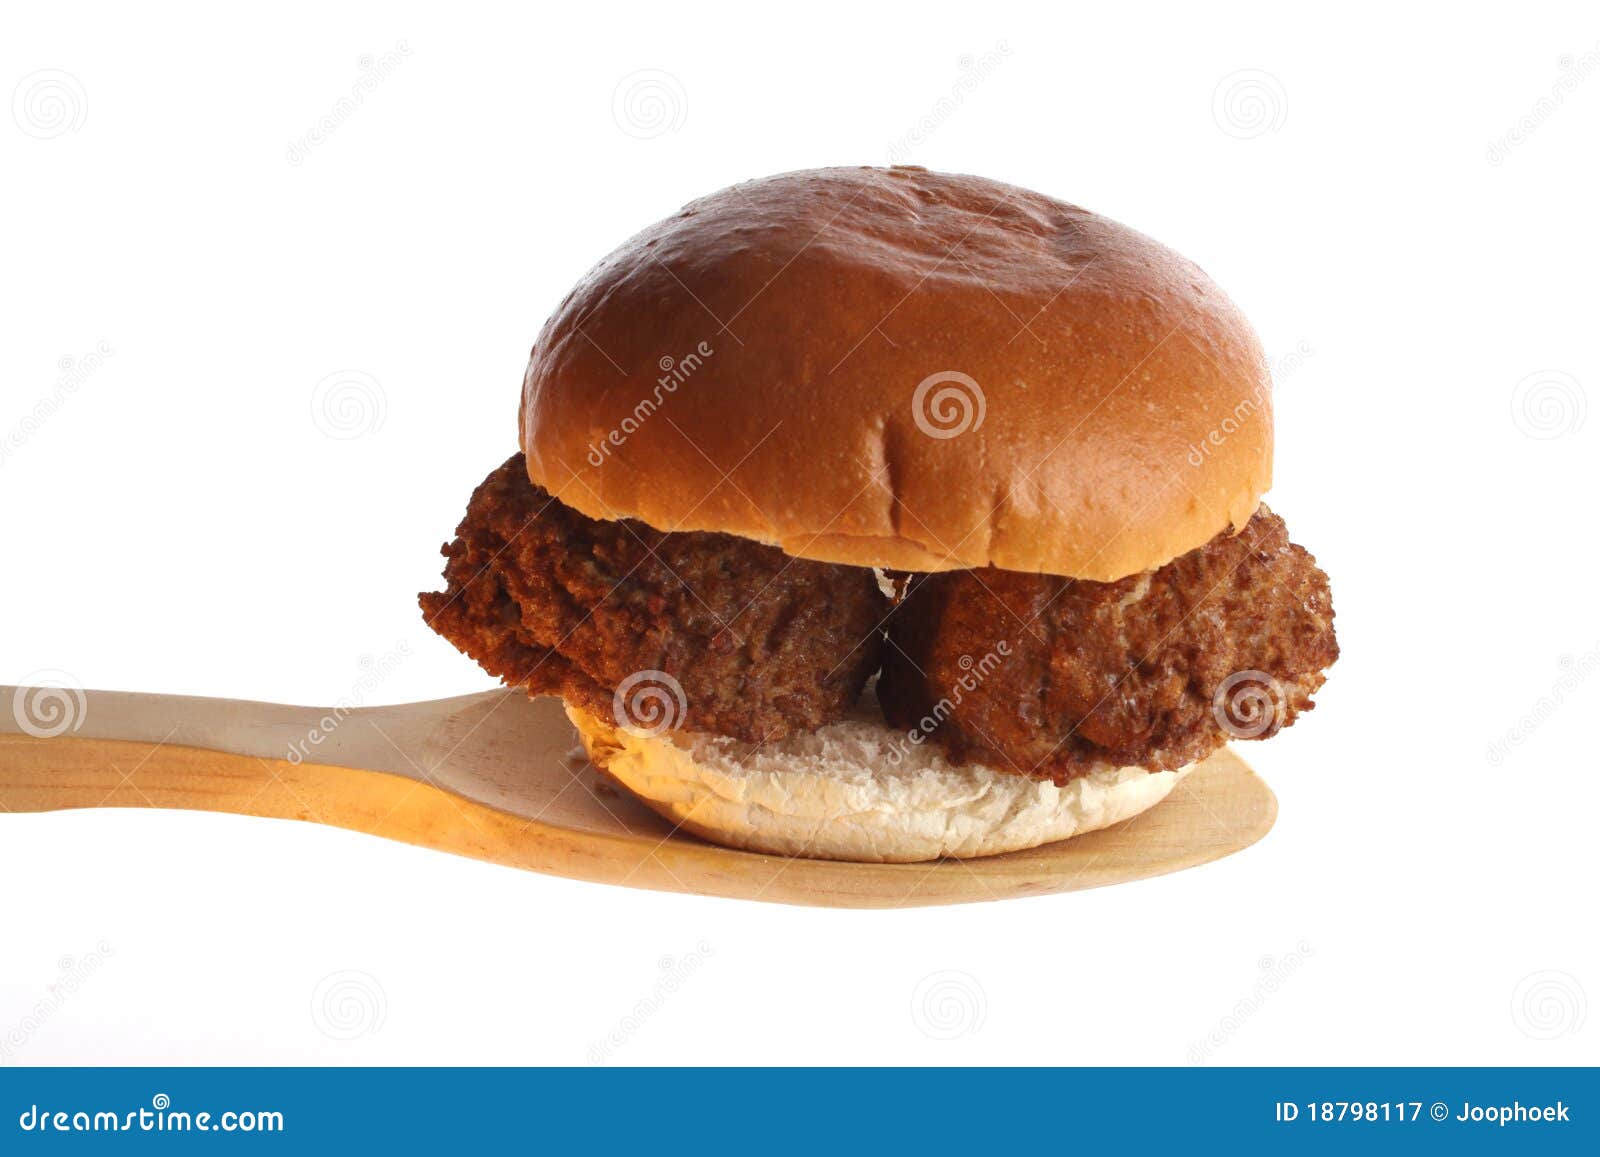 meatball sandwich clipart - photo #46